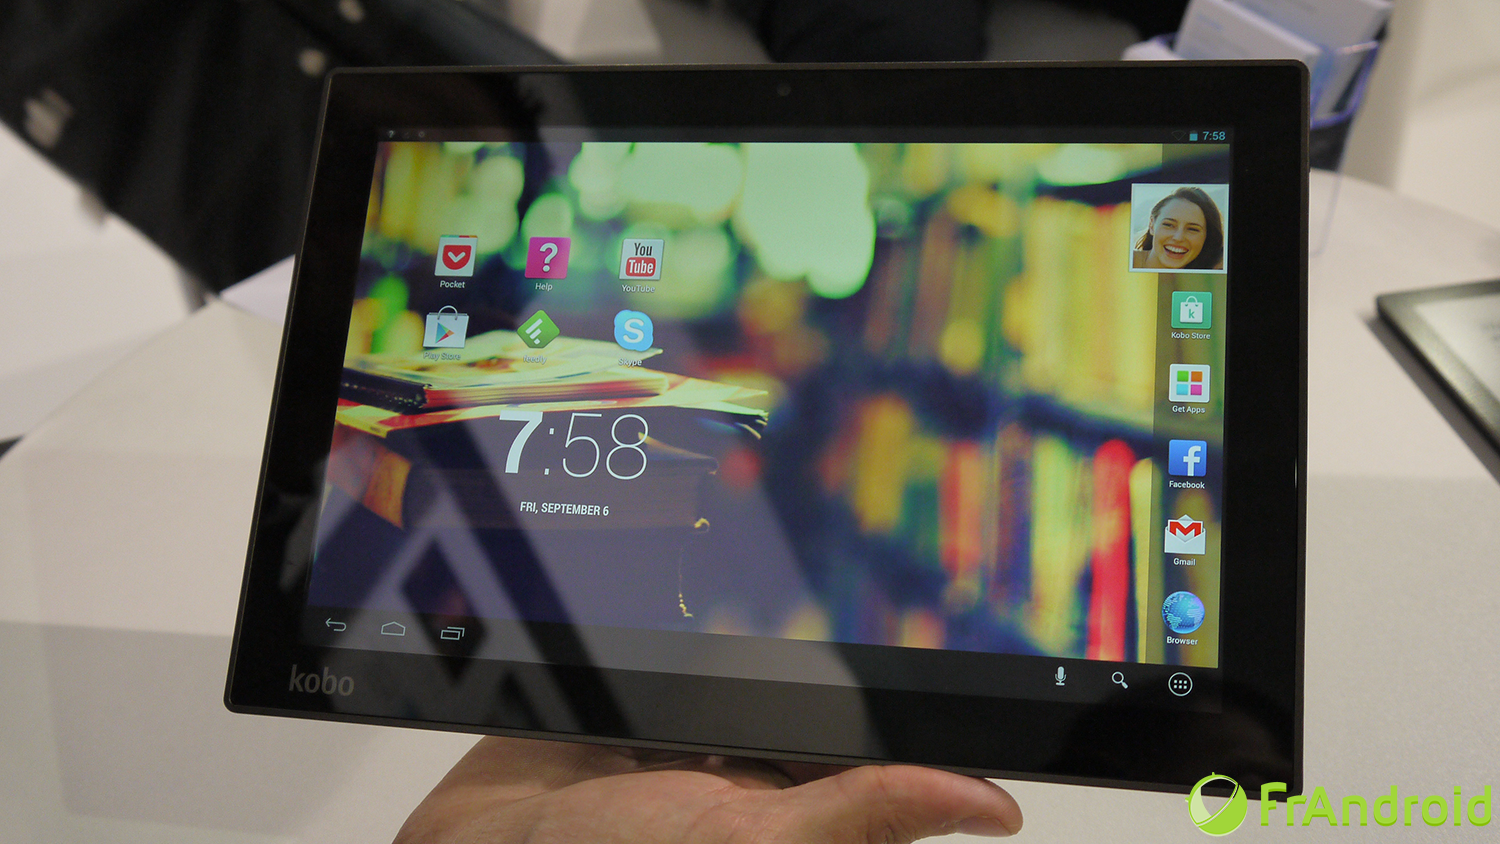 Présentation de la tablette Kobo Arc 10 HD dotée d’une définition de 2560 x 1600 pixels